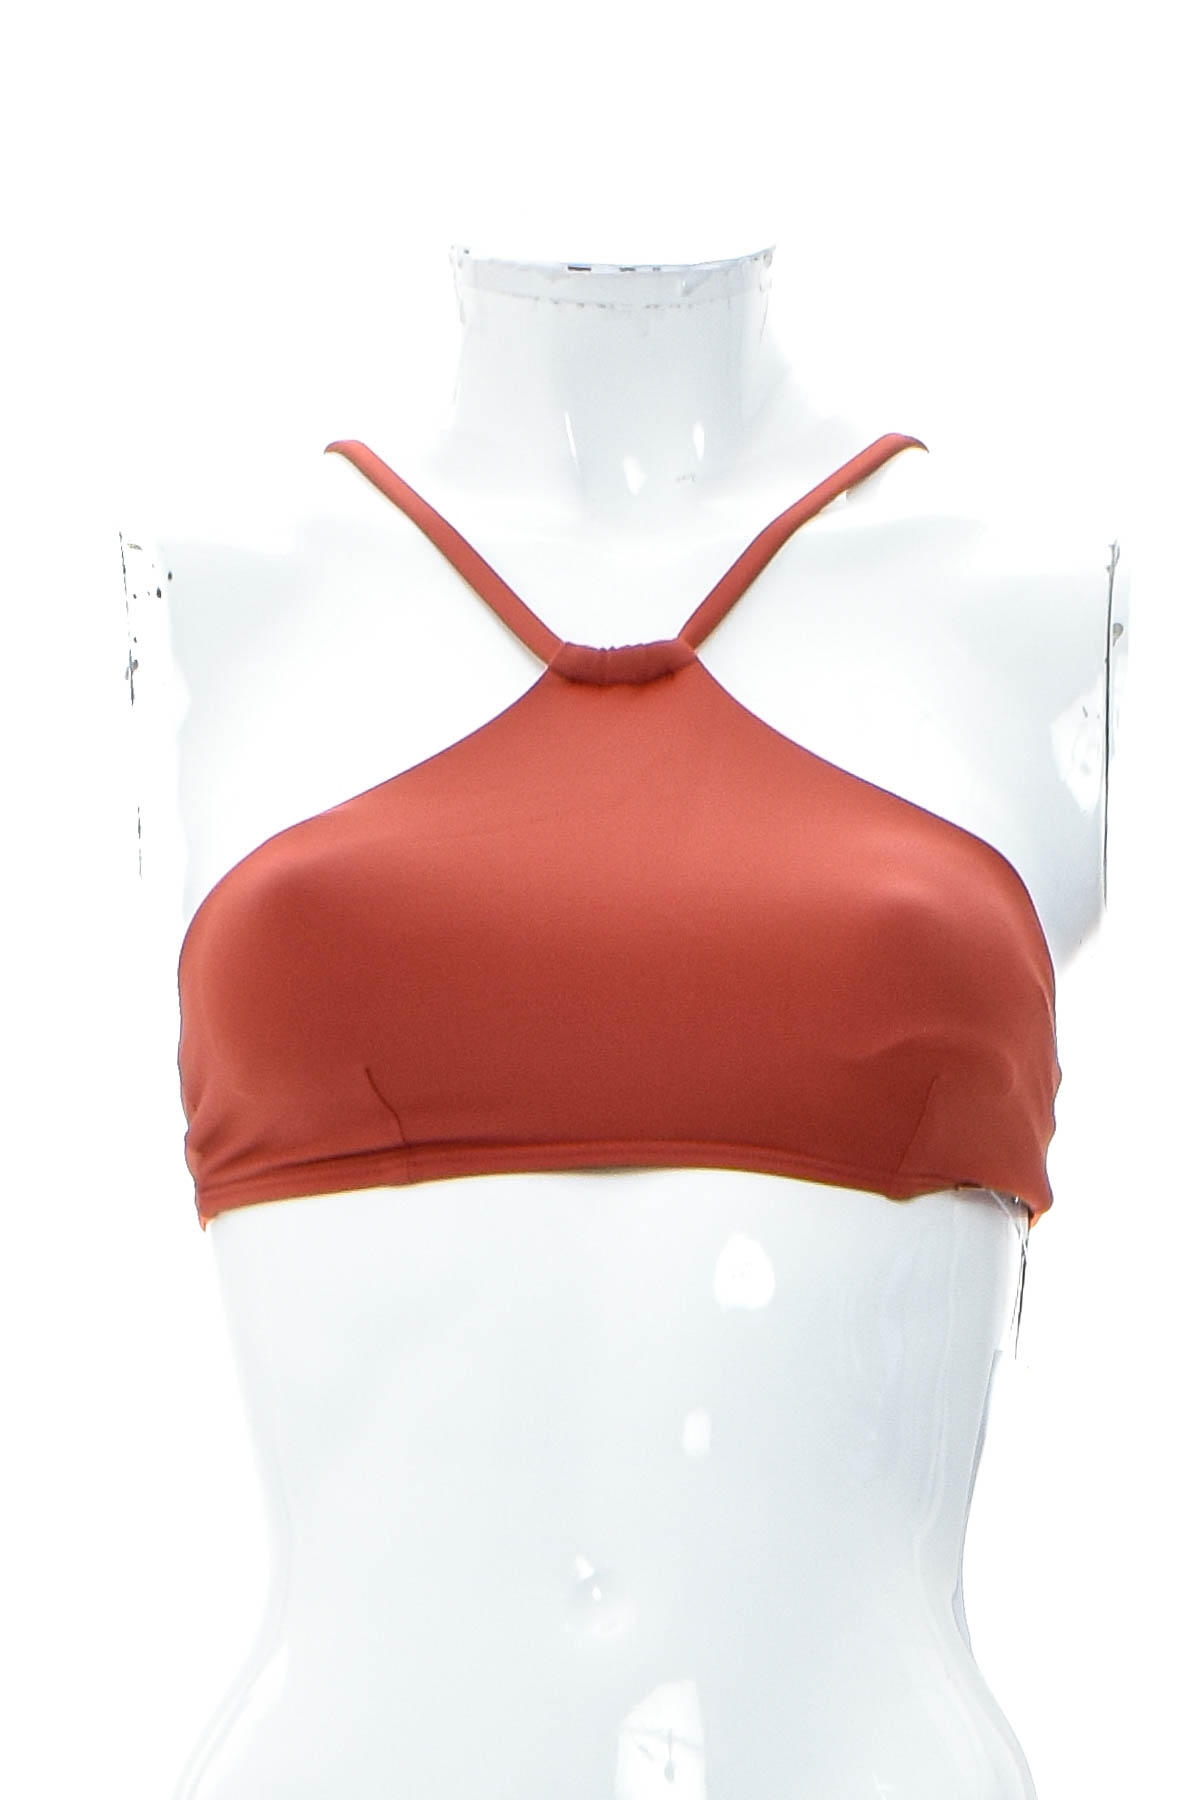 Women's swimsuit bikini top - O'NEILL - 0